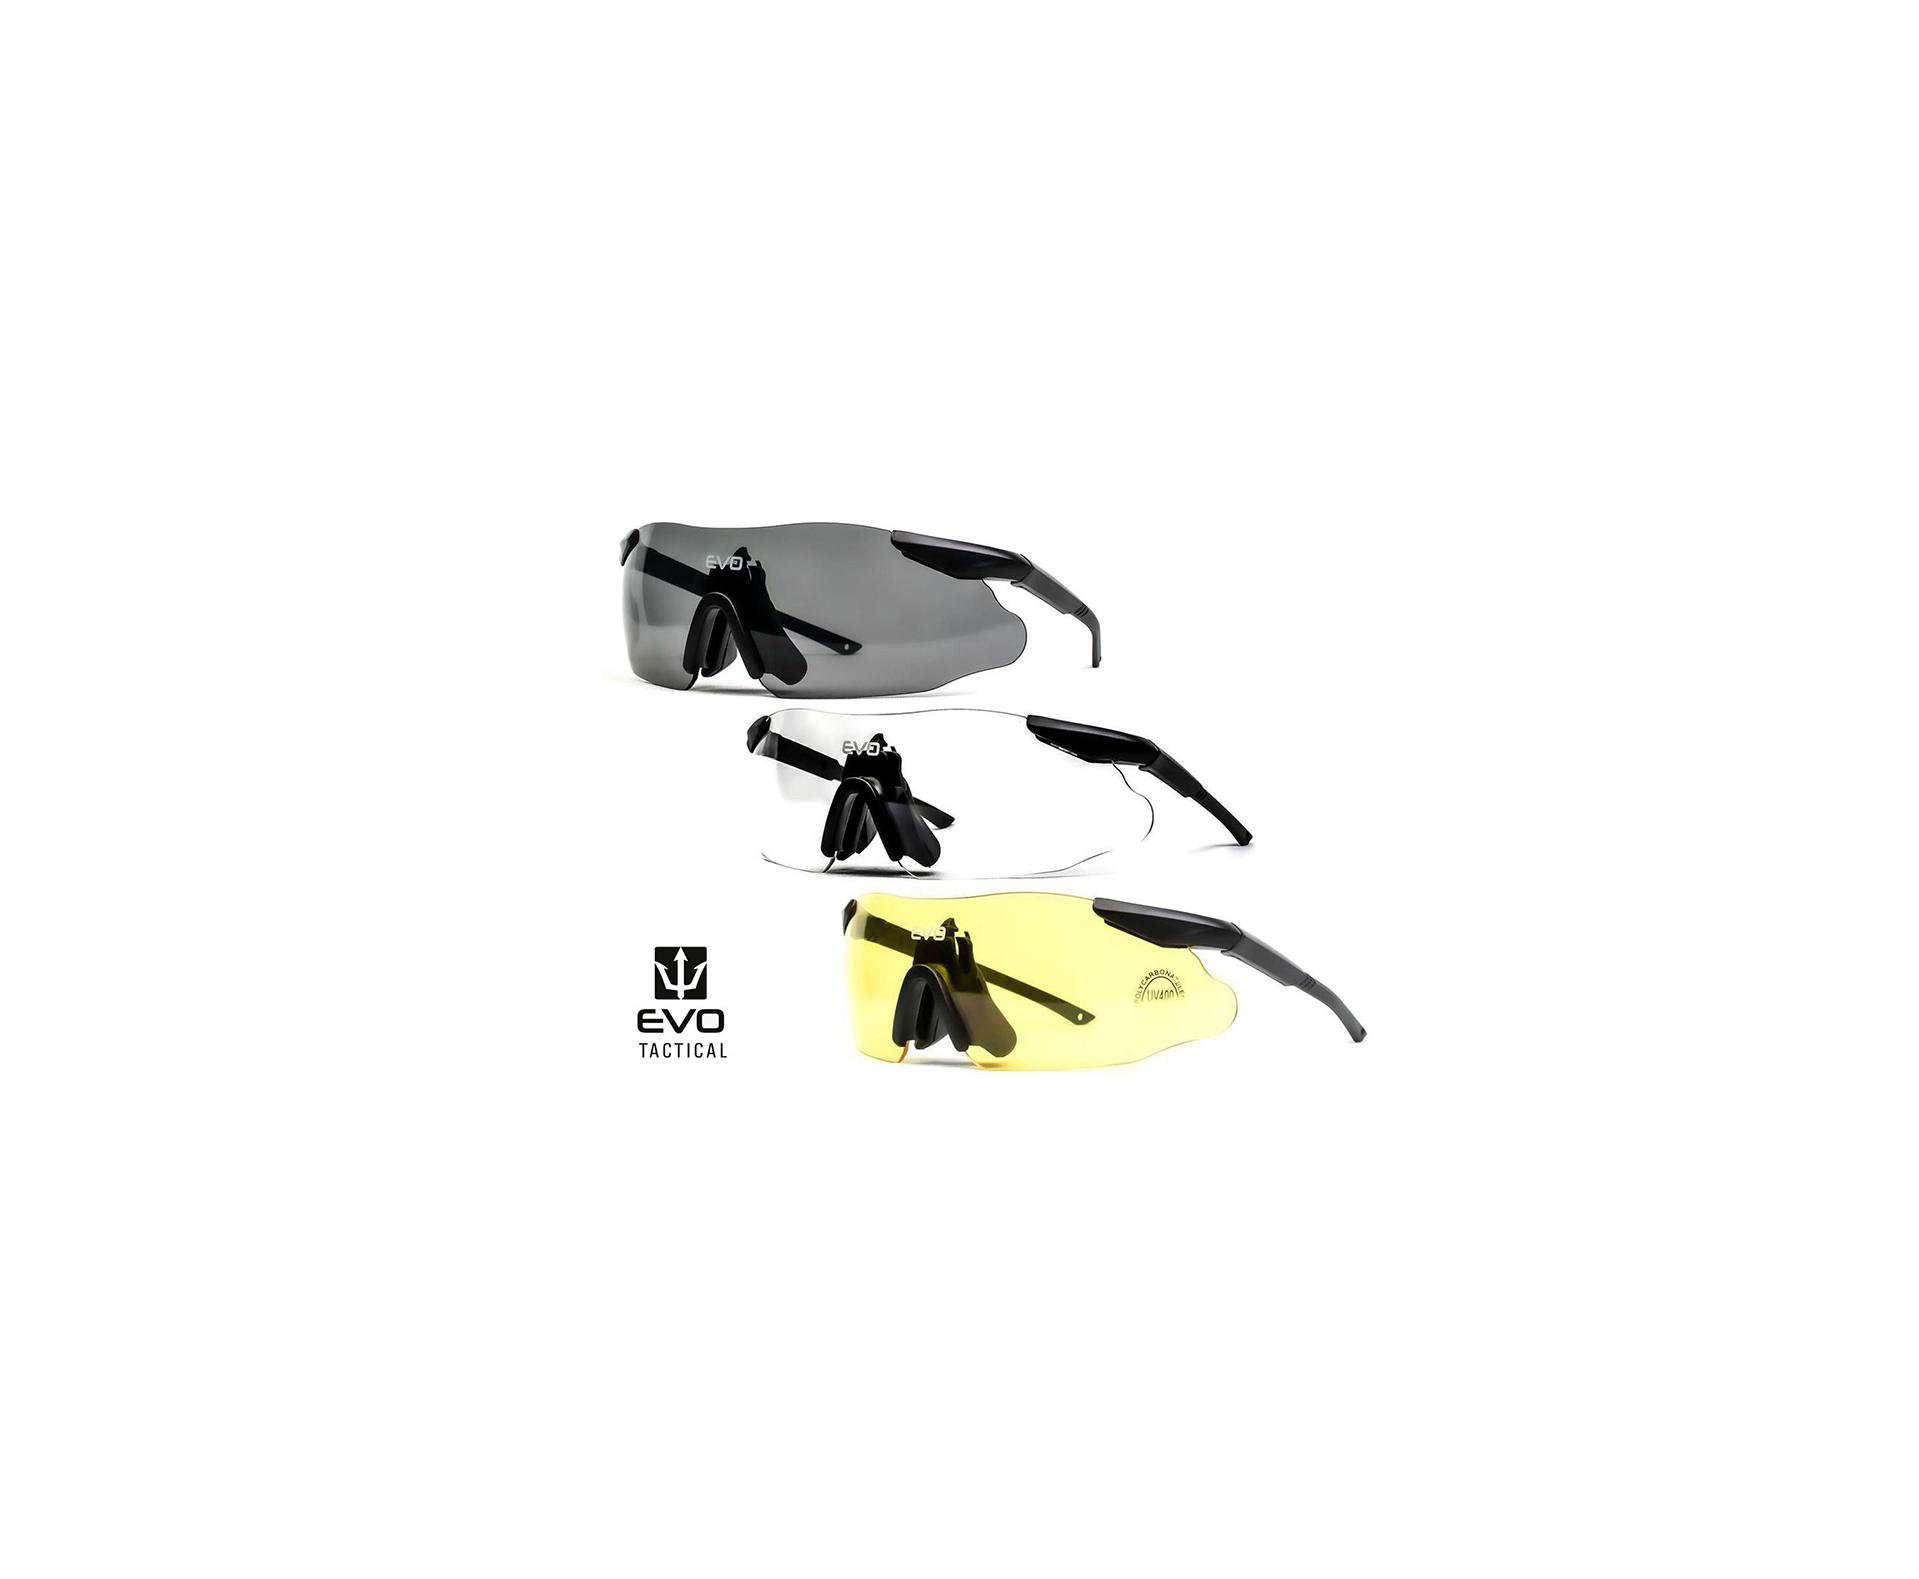 óculos De Proteção Tático Instant Preto Evo - G010bk